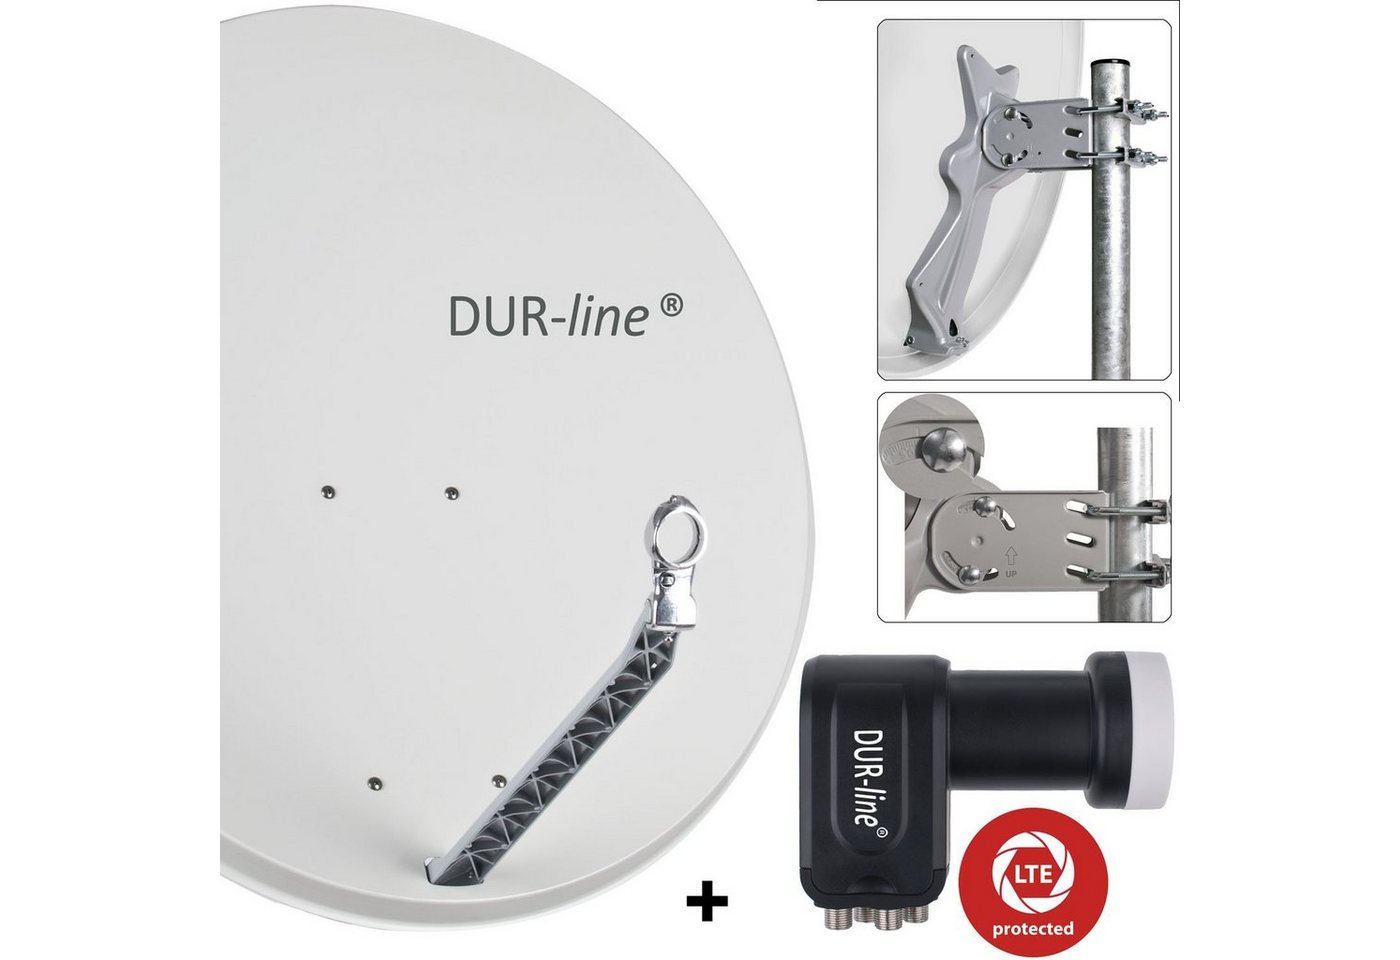 DUR-line DUR-line 4 Teilnehmer Set - Qualitäts-Alu-Satelliten-Komplettanlage - Sat-Spiegel von DUR-line